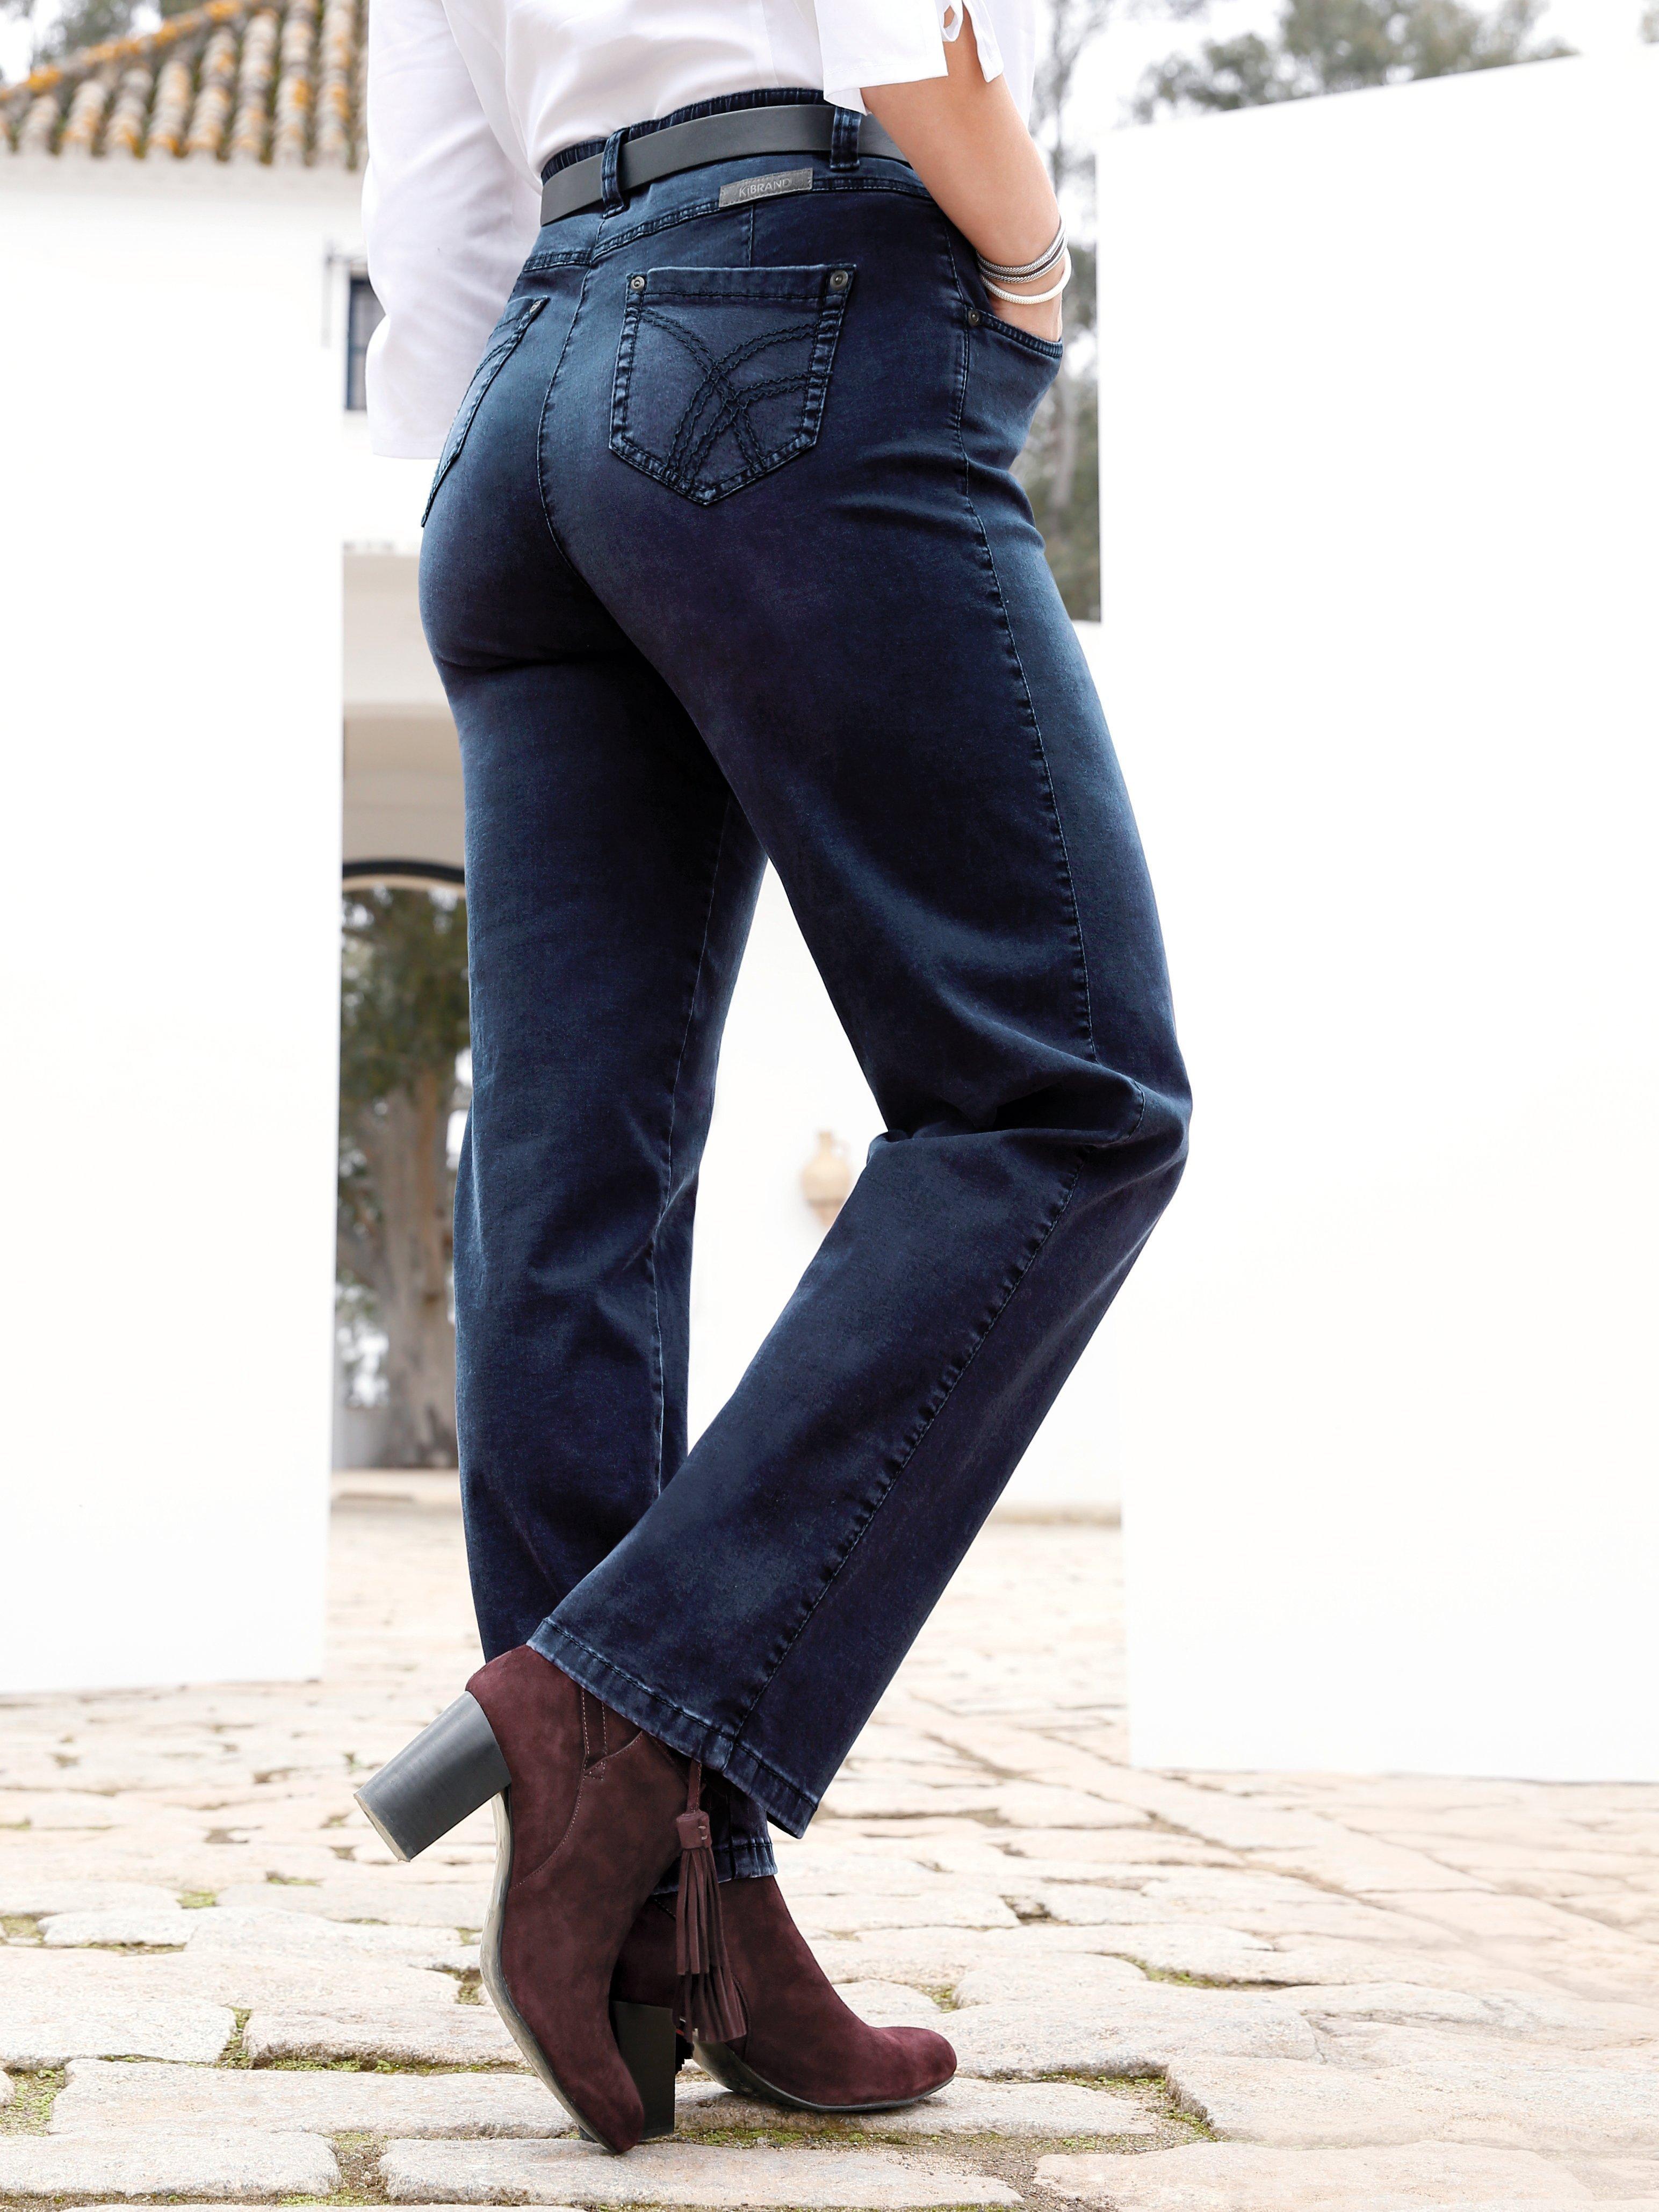 KjBrand - Jeans, model Babsie straigth leg